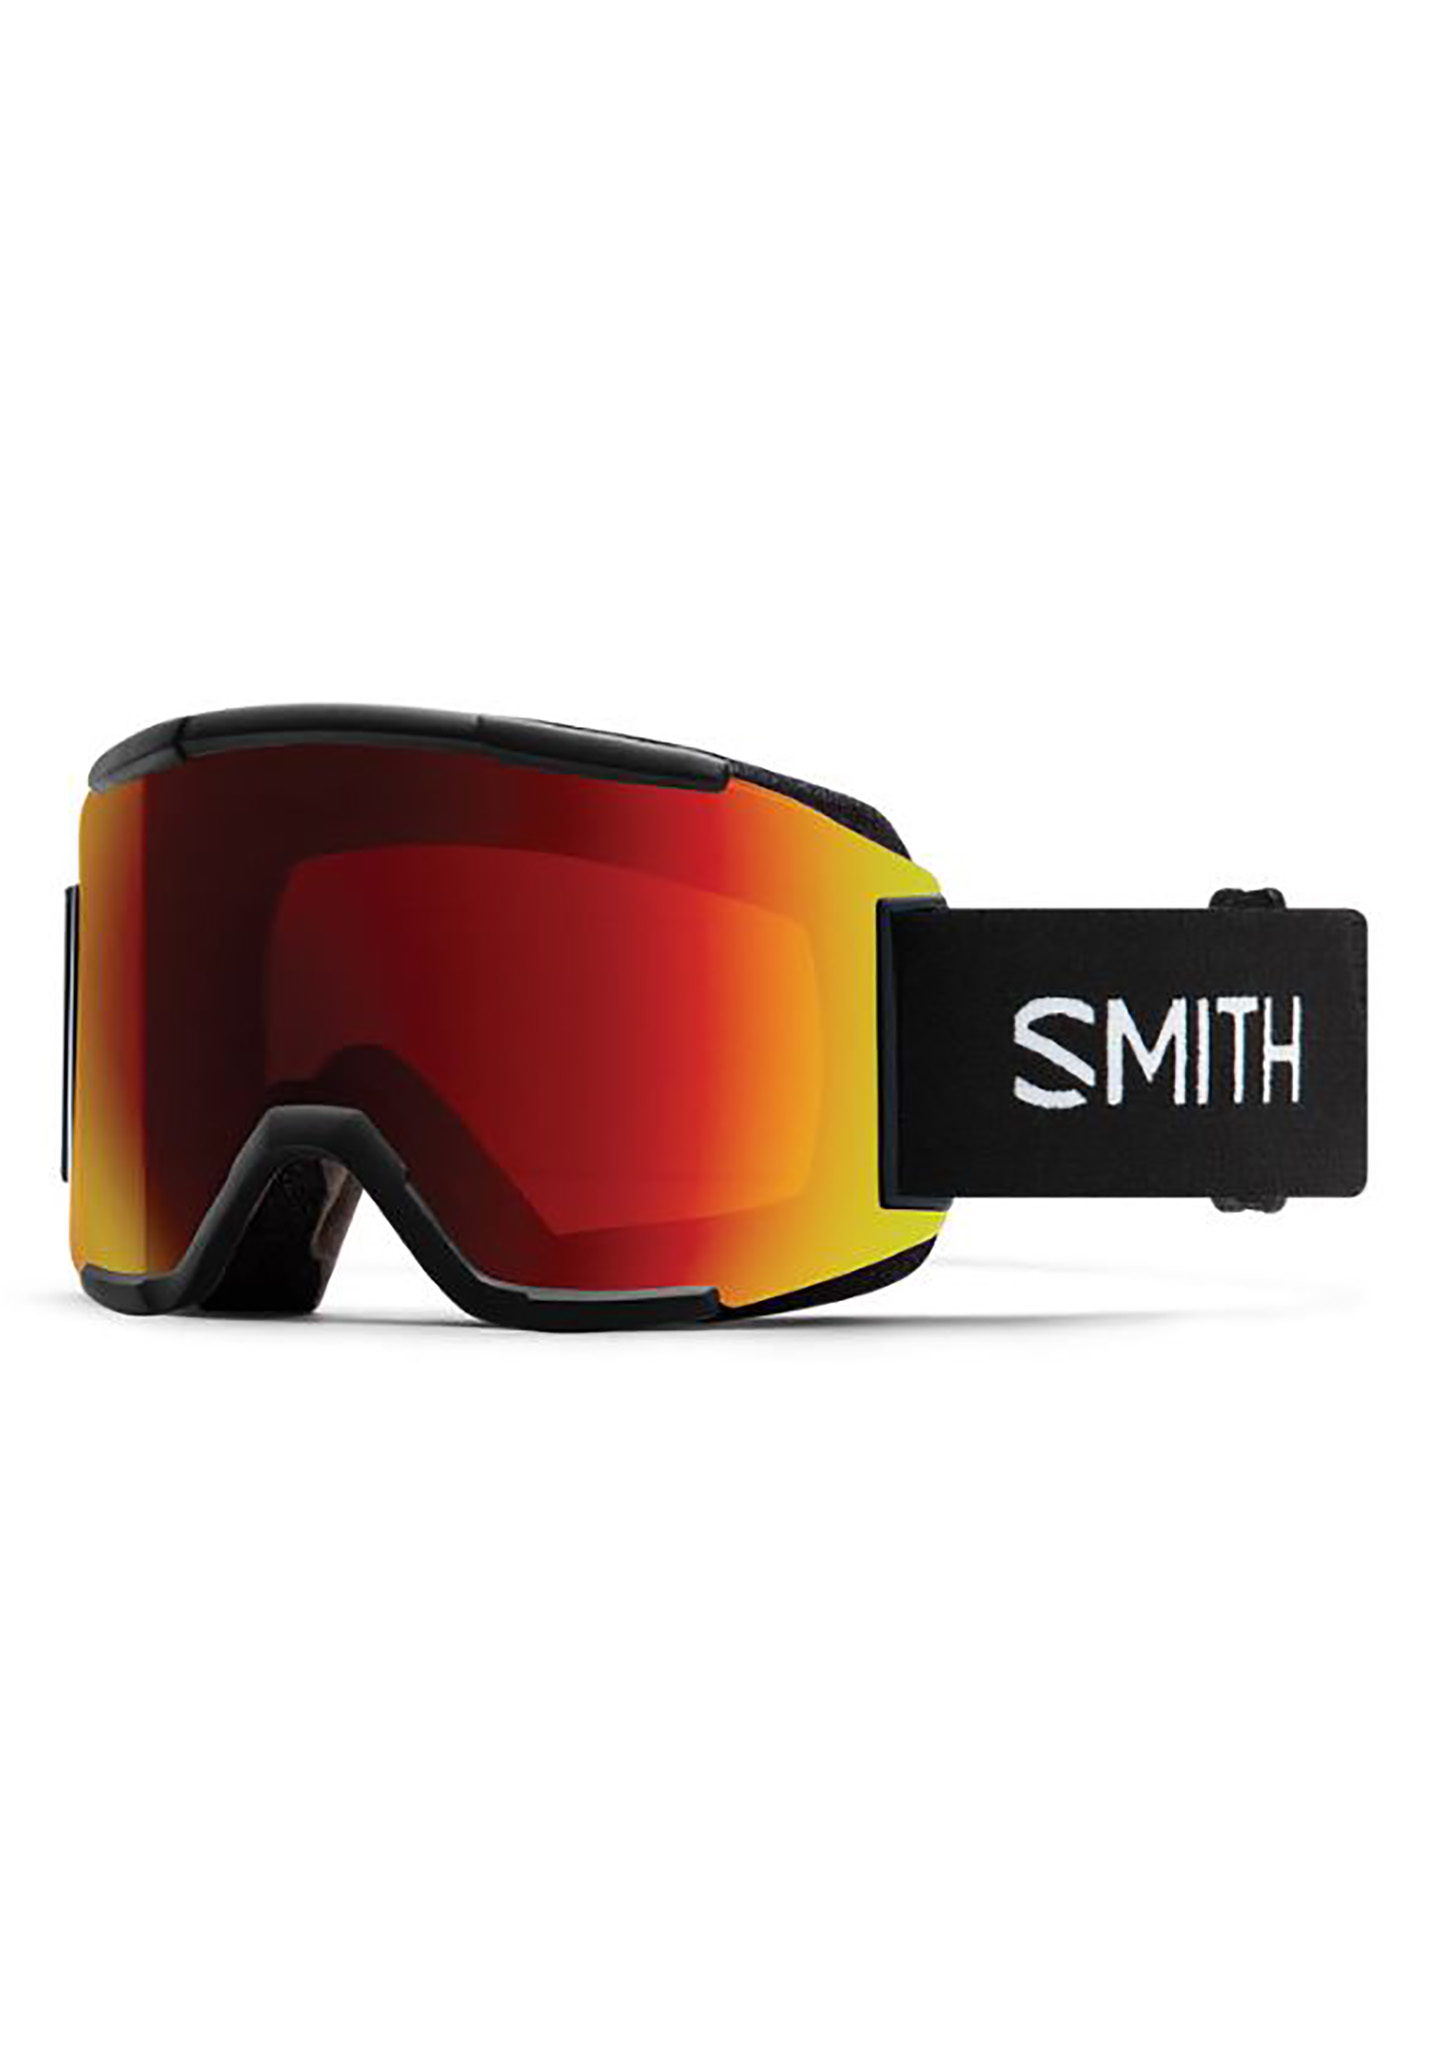 Smith Squad Snowboardbrillen schwarz/sonnenrot spiegel One Size